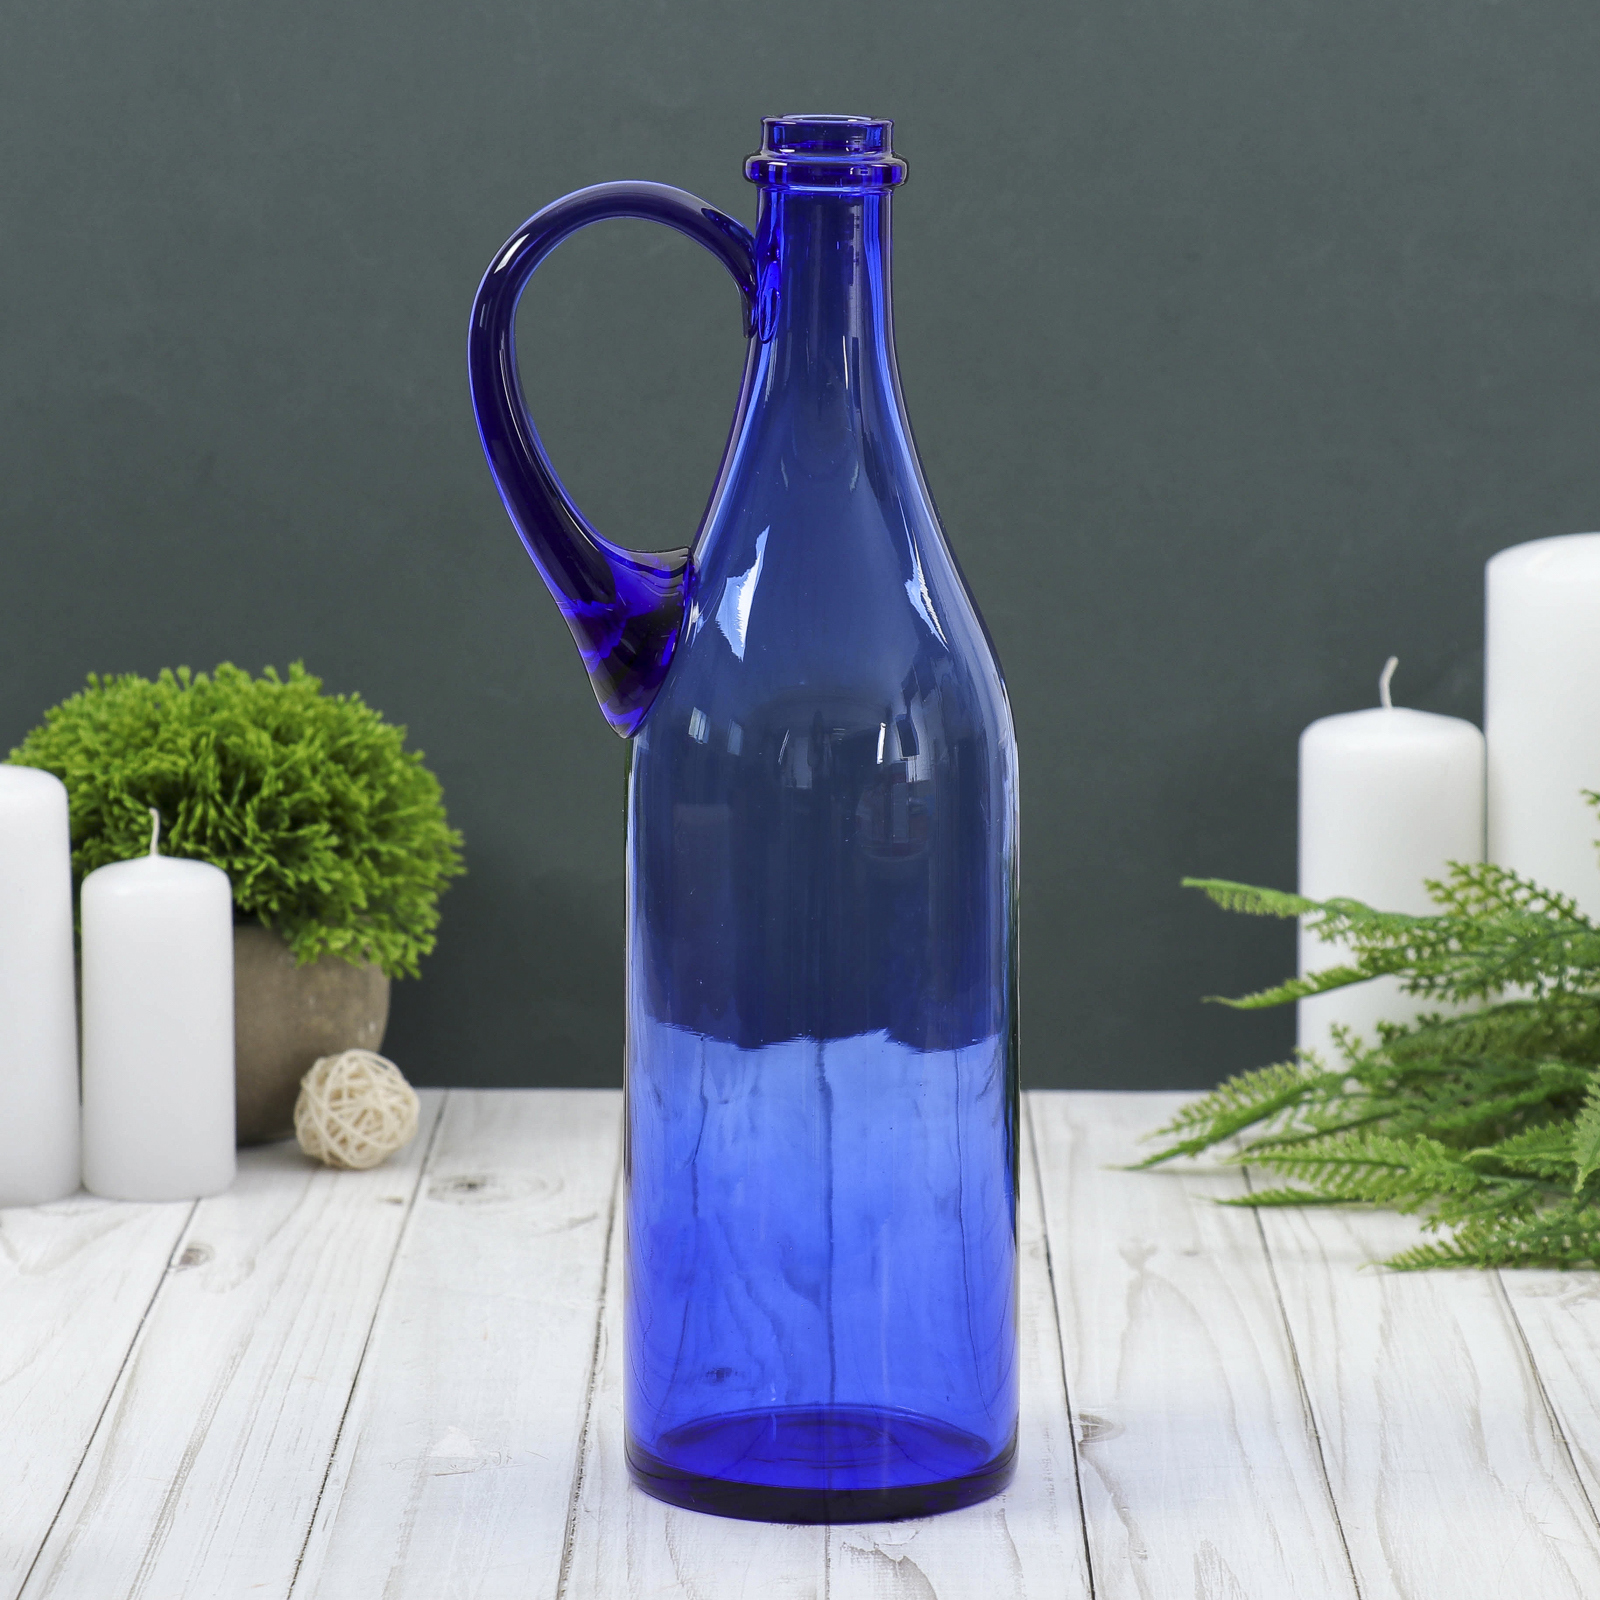 1 17 литра. Бутыль литр руч 1л d 90 h 320 мм из синего стекла без декора. Синяя бутылка. Голубая стеклянная бутылка. Стеклянные бутылки синего цвета.